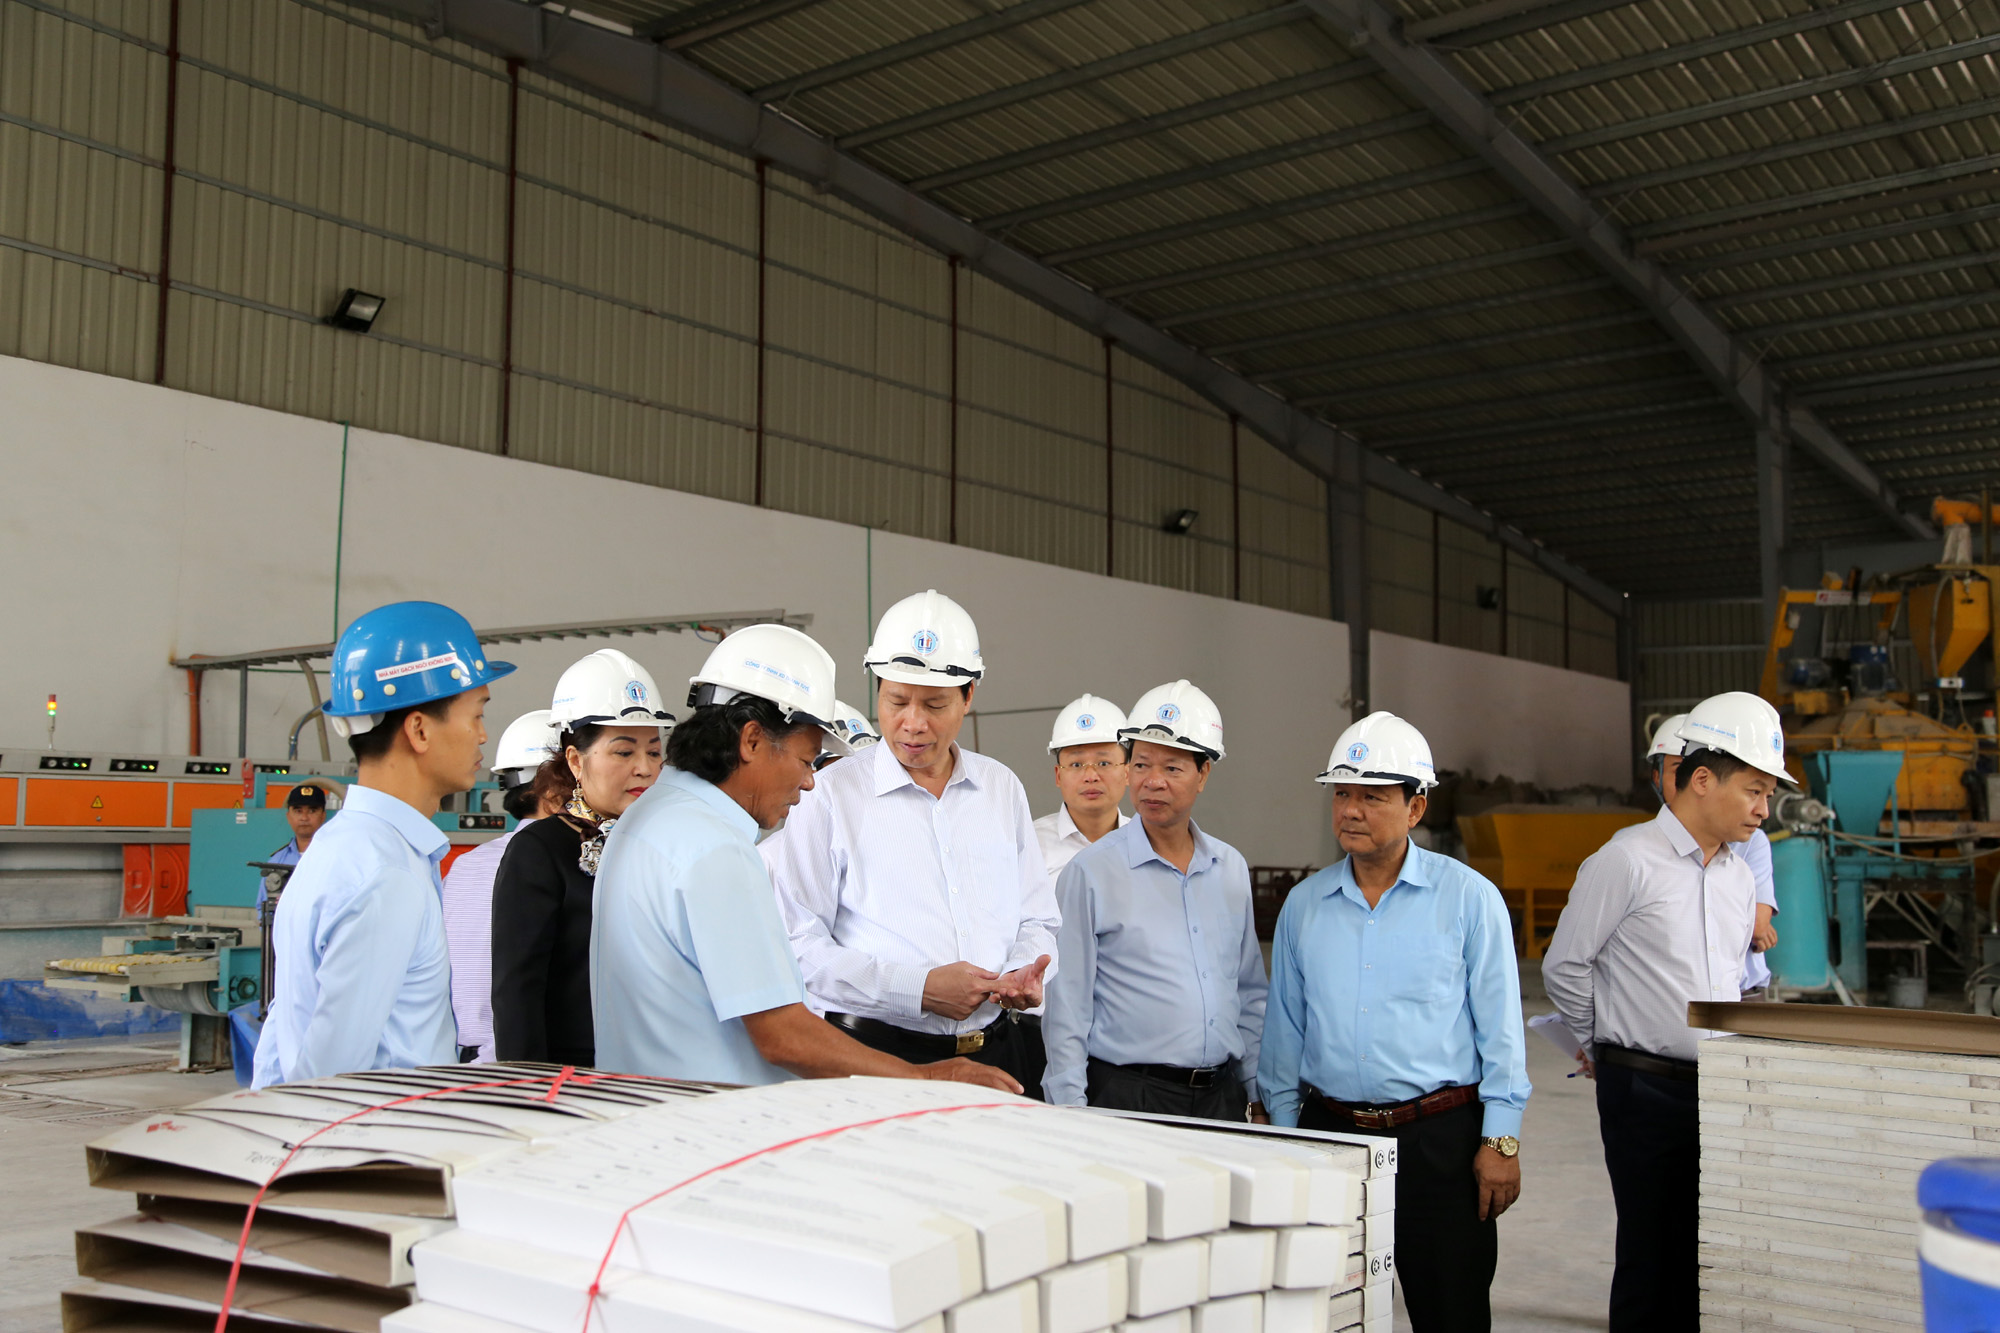 Đồng chí Nguyễn Đức Long, Phó Bí thư Tỉnh ủy, Chủ tịch UBND tỉnh, nắm tình hình hoạt động sản xuất của Nhà máy gạch.